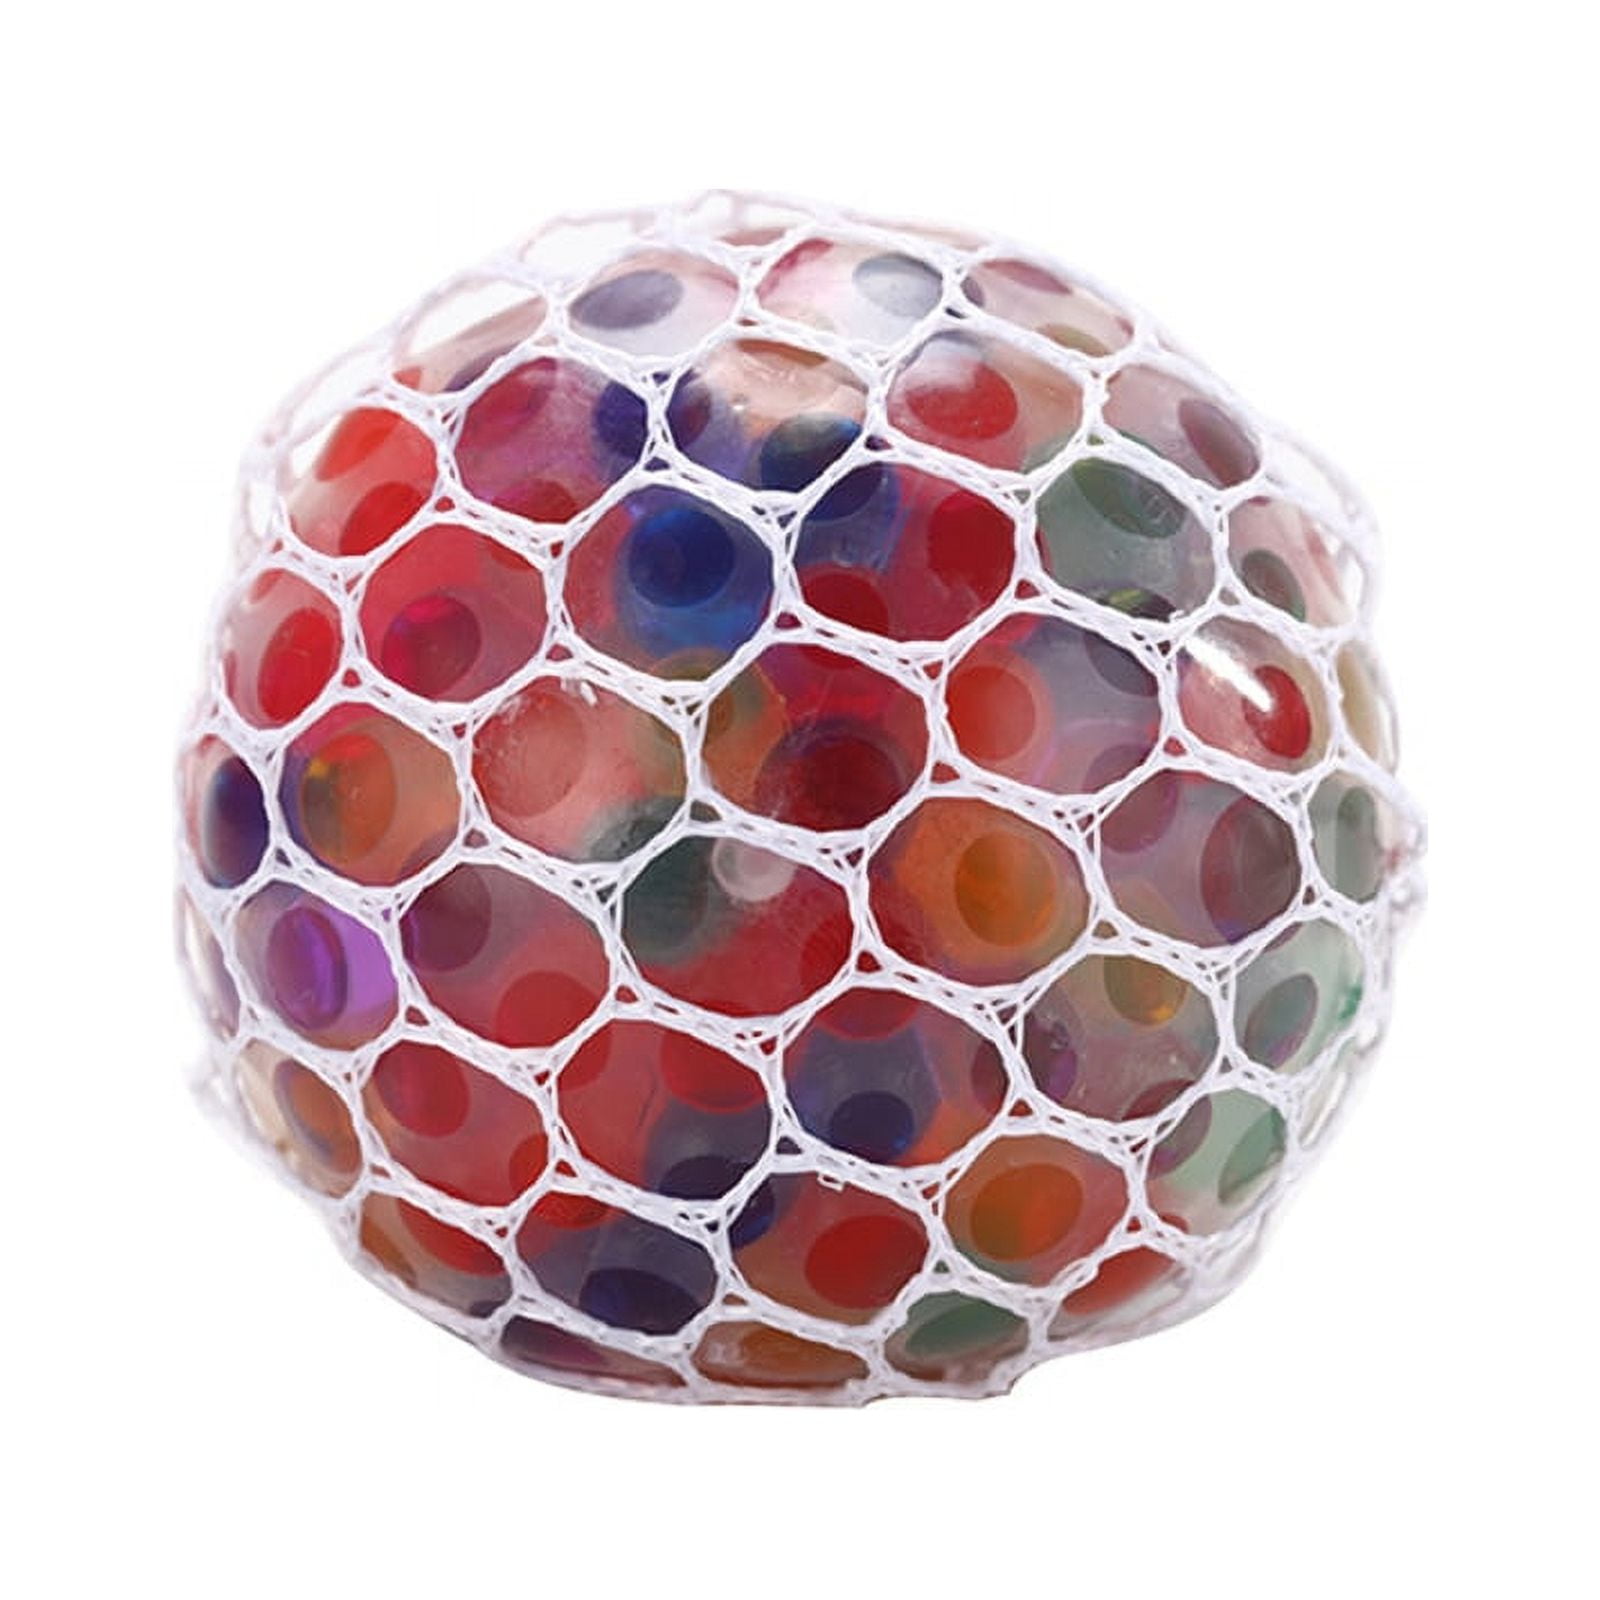 Pinsheng 4 Pack Balles Anti-Stress, Squishy Ball Remplies de Perles D'eau  pour Soulagement, Multicolores, Antistress, Sensorielle Boule à Presser